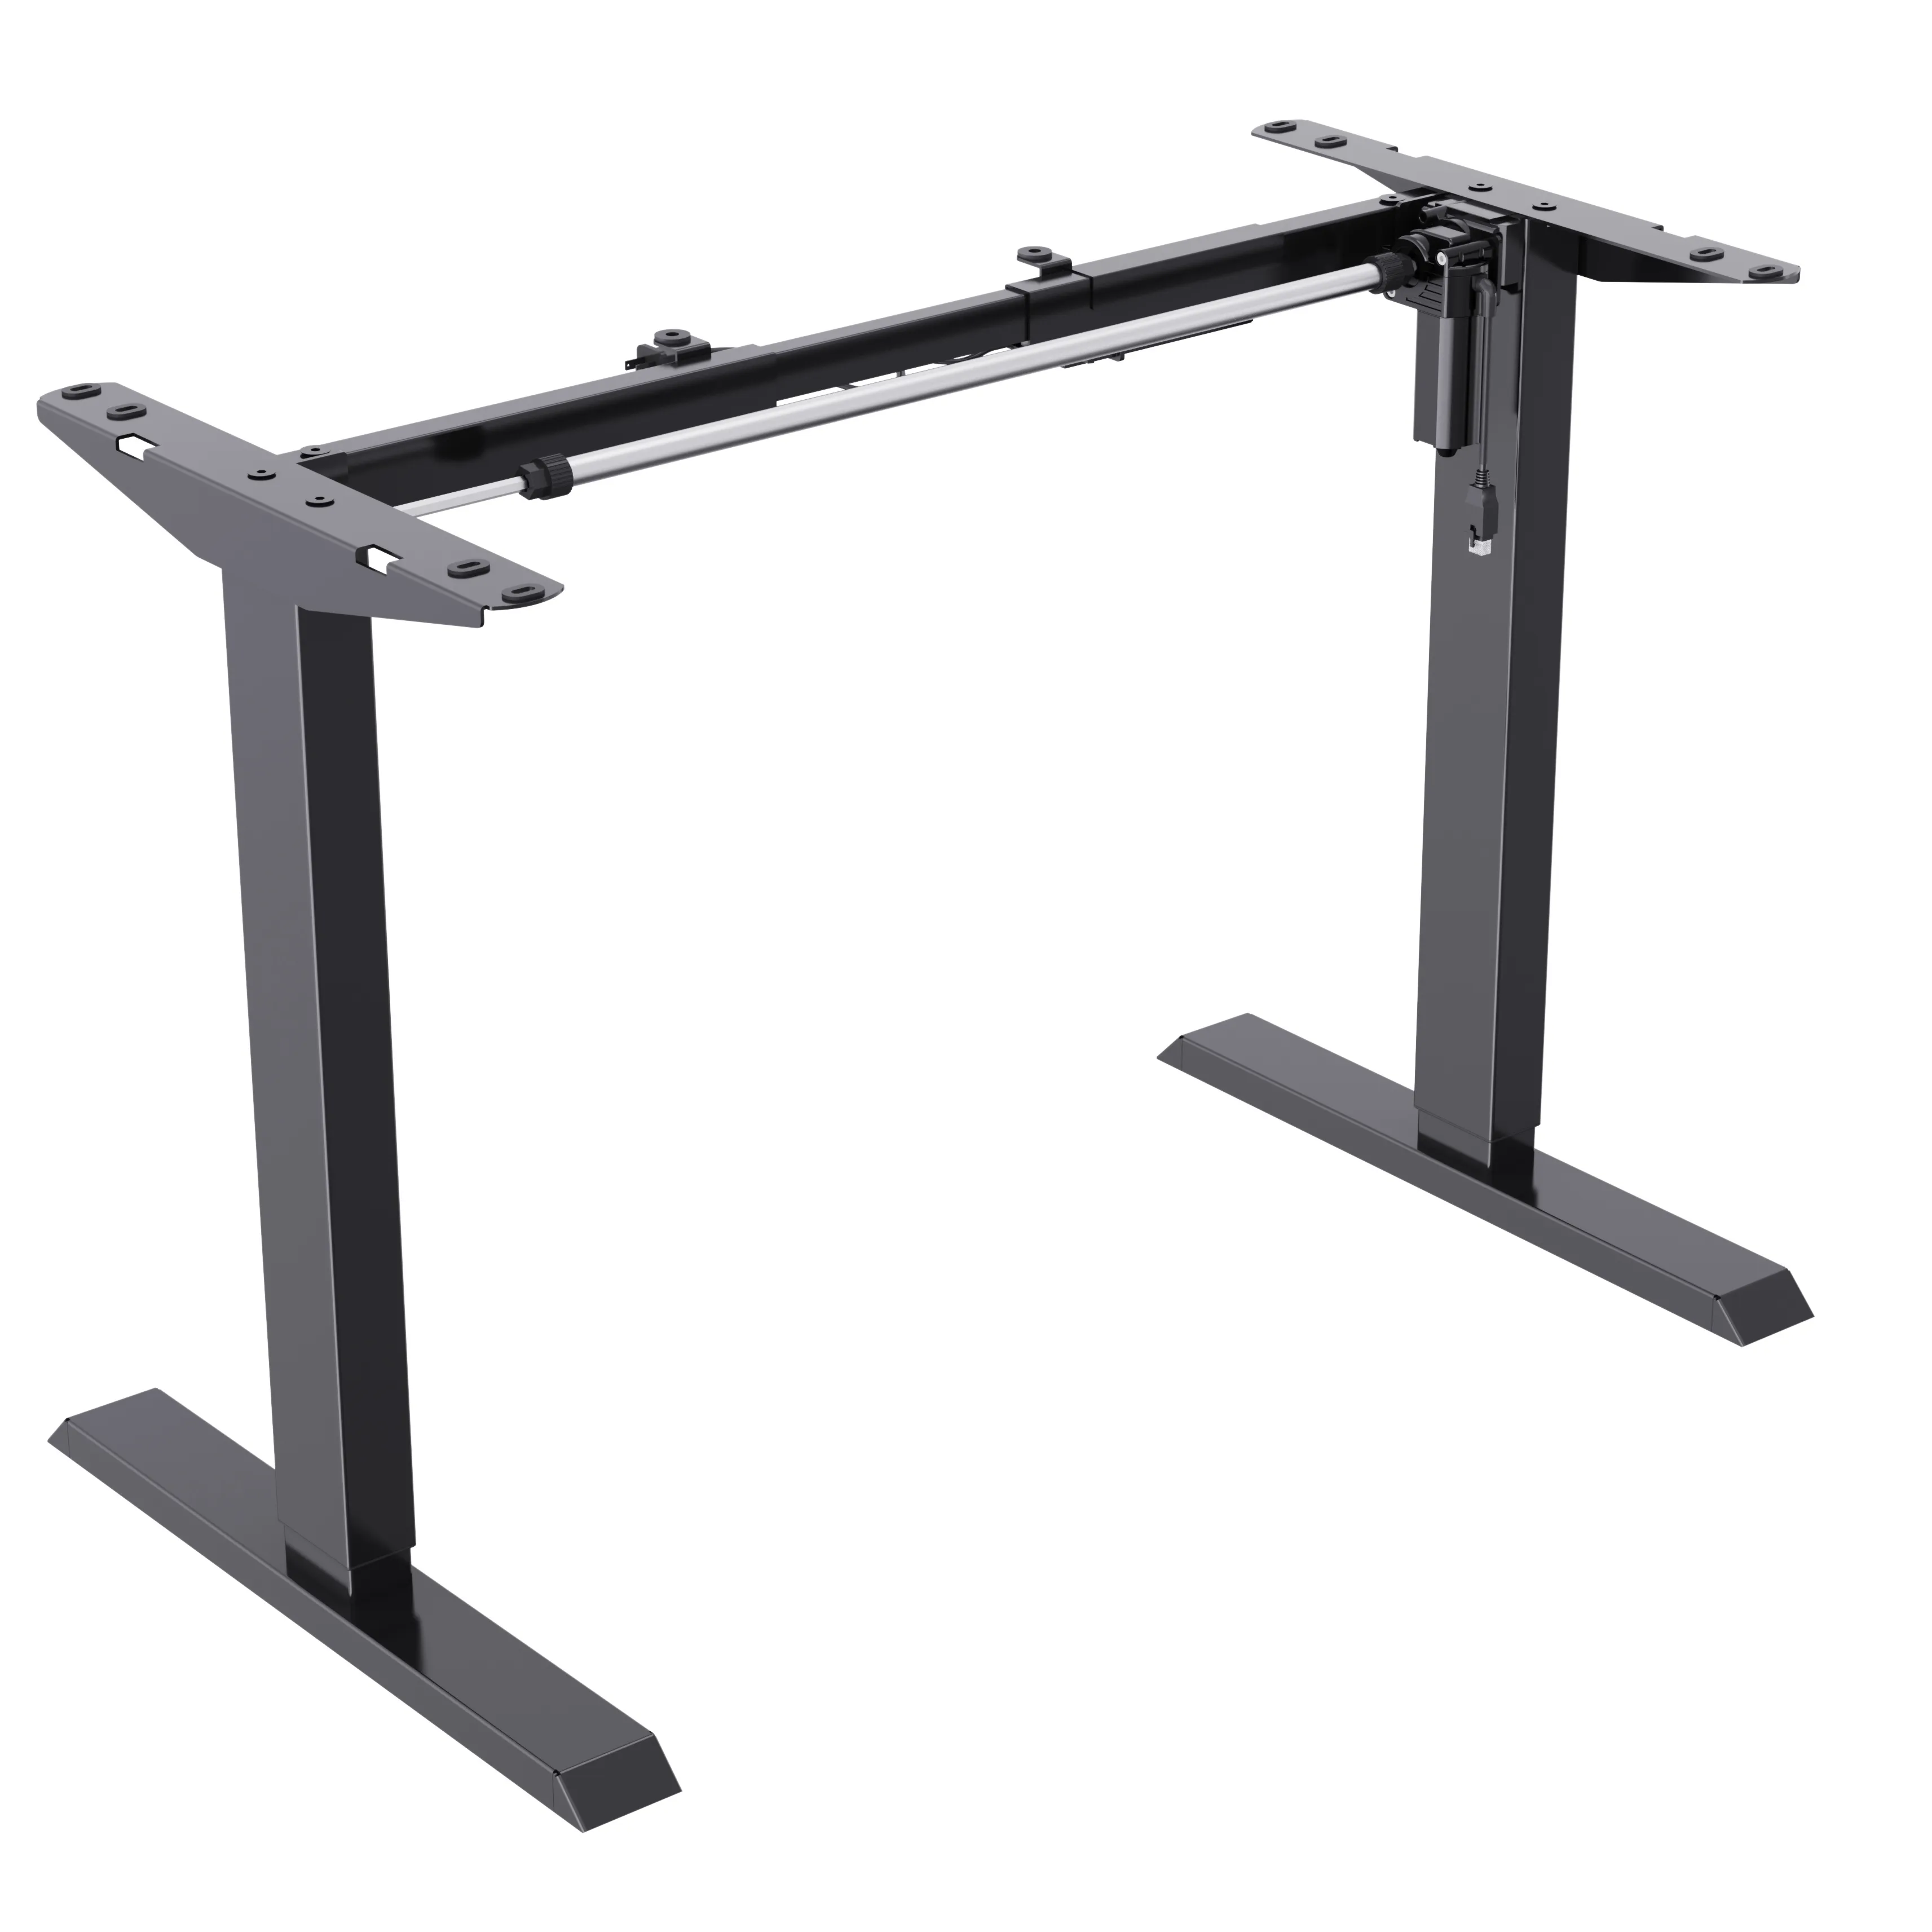 Office height adjustable desk metal working single motor table base electric desk sit standing desk frame